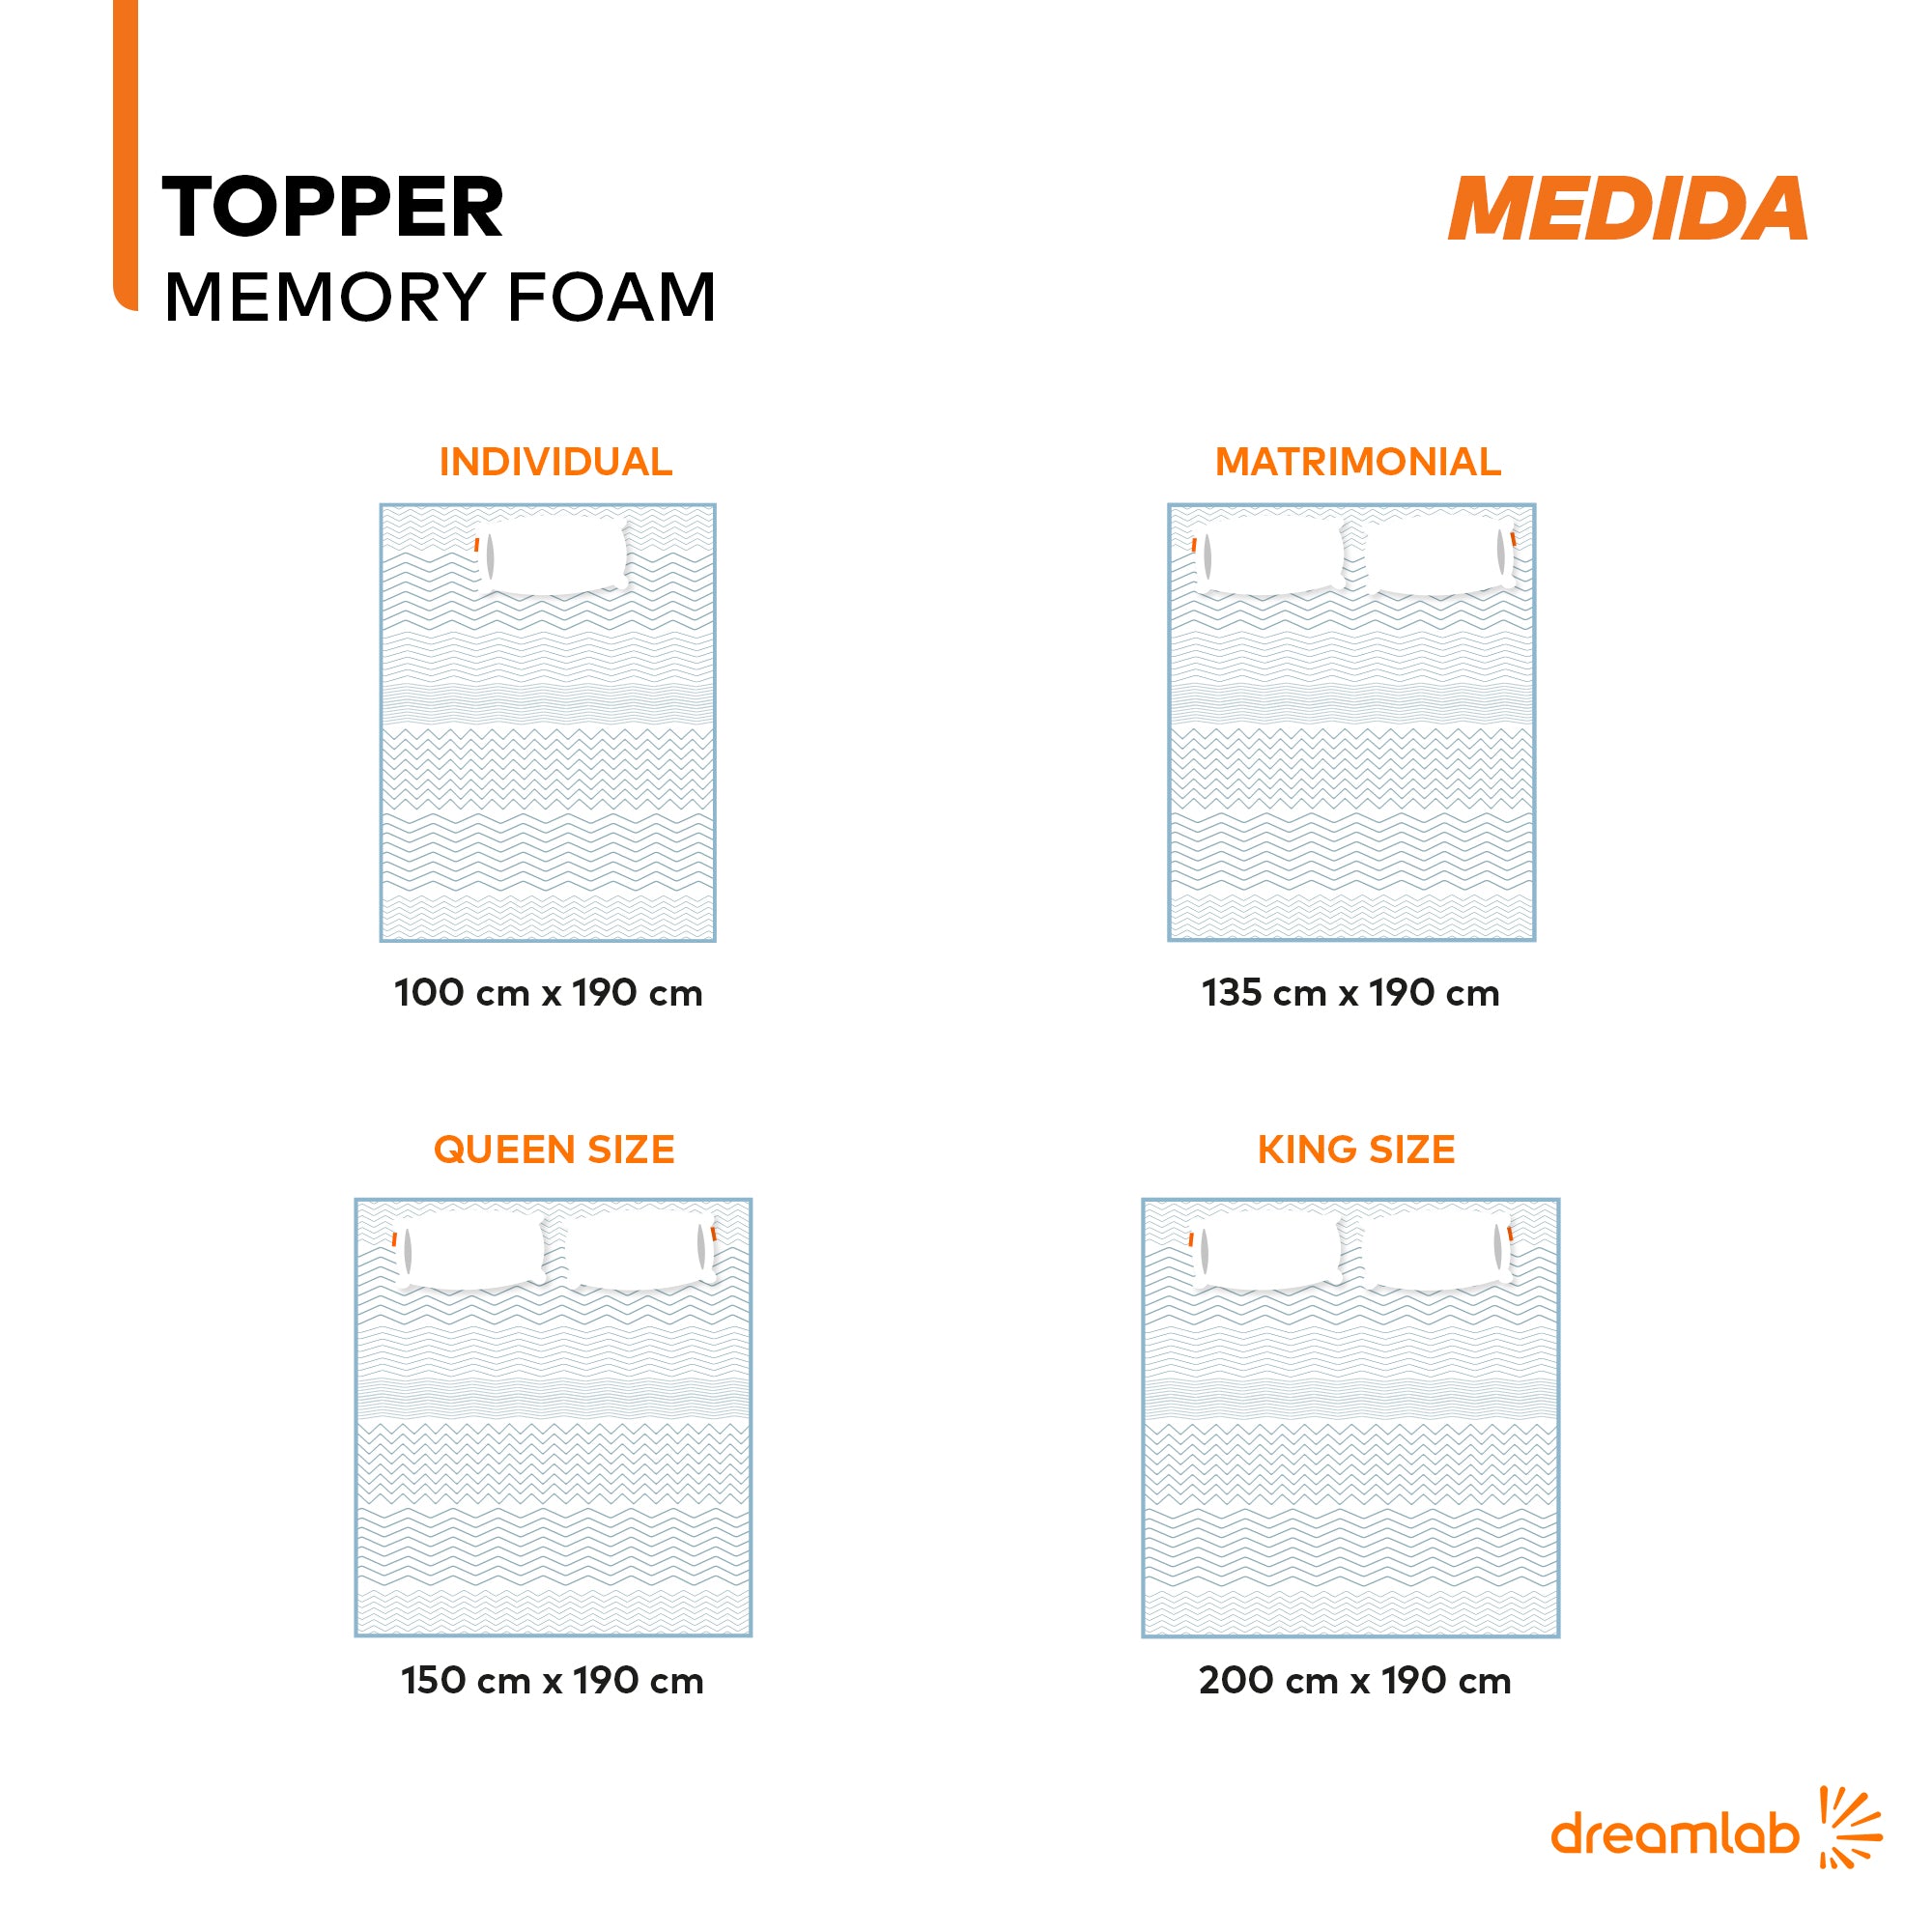 Topper Memory Foam